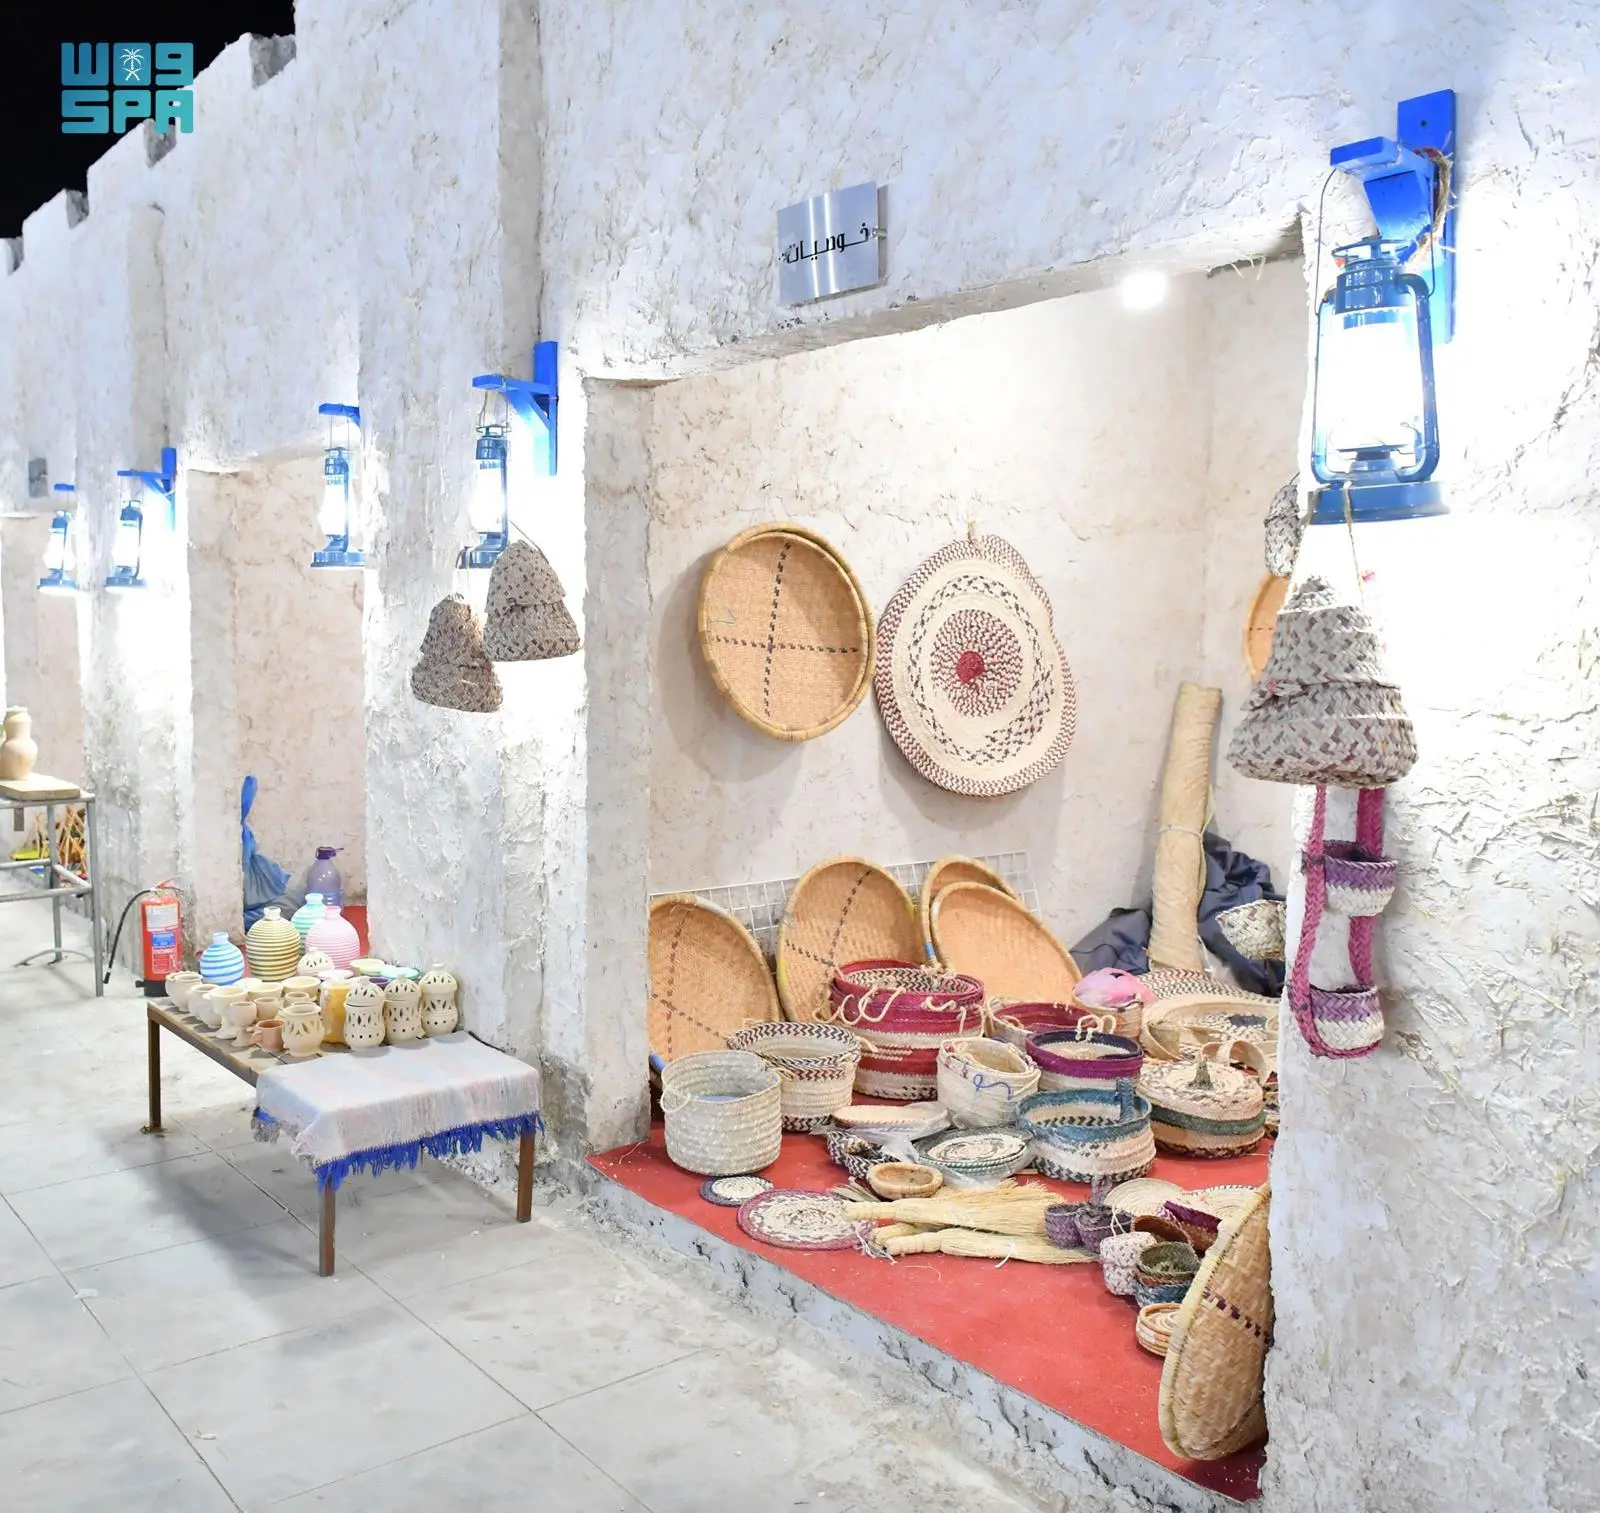 أكثر من 200 قطعة خوص حساوية تستعرضها فعاليات مهرجان “بيت حائل”